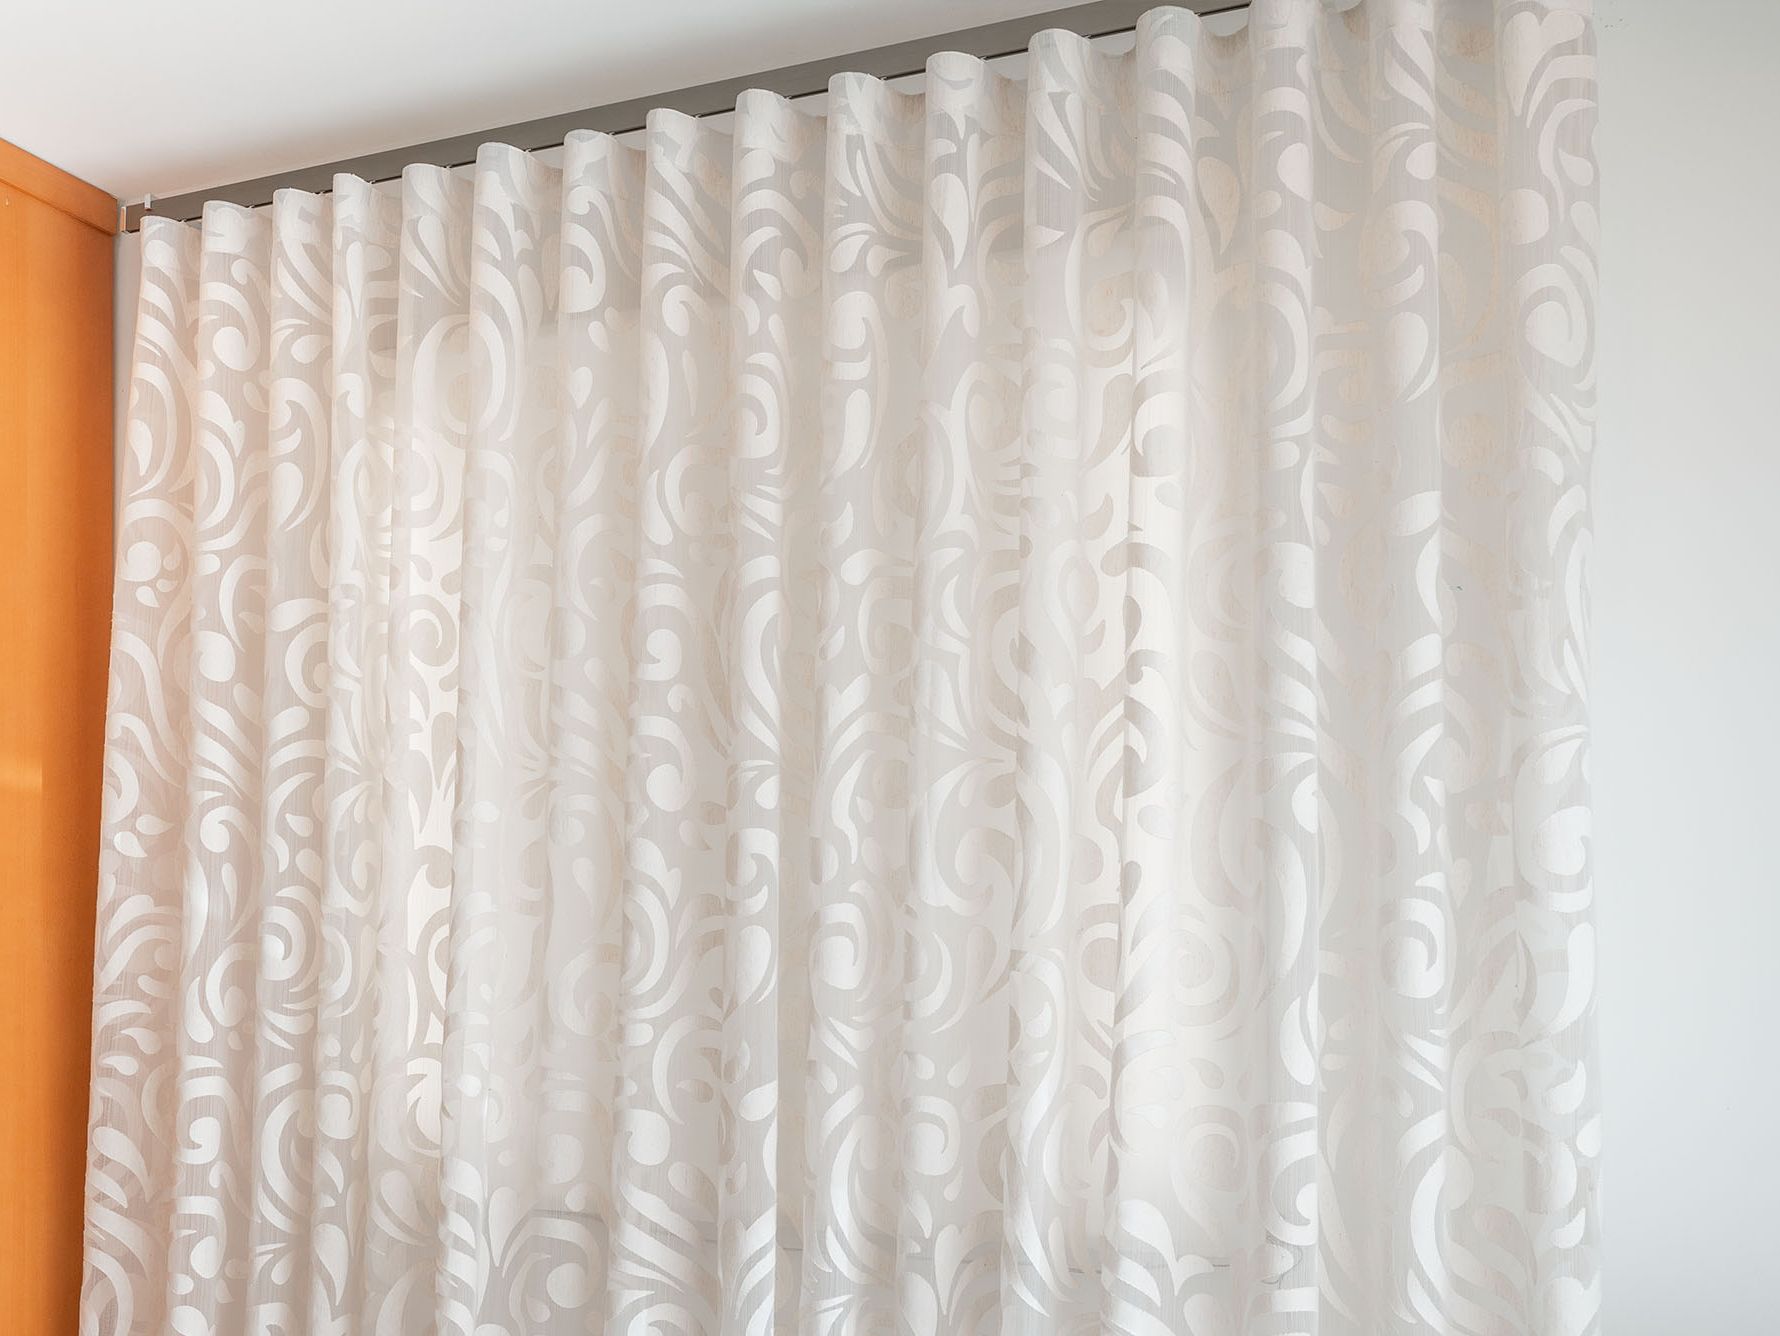 Decoración cortinas - onda perfecta